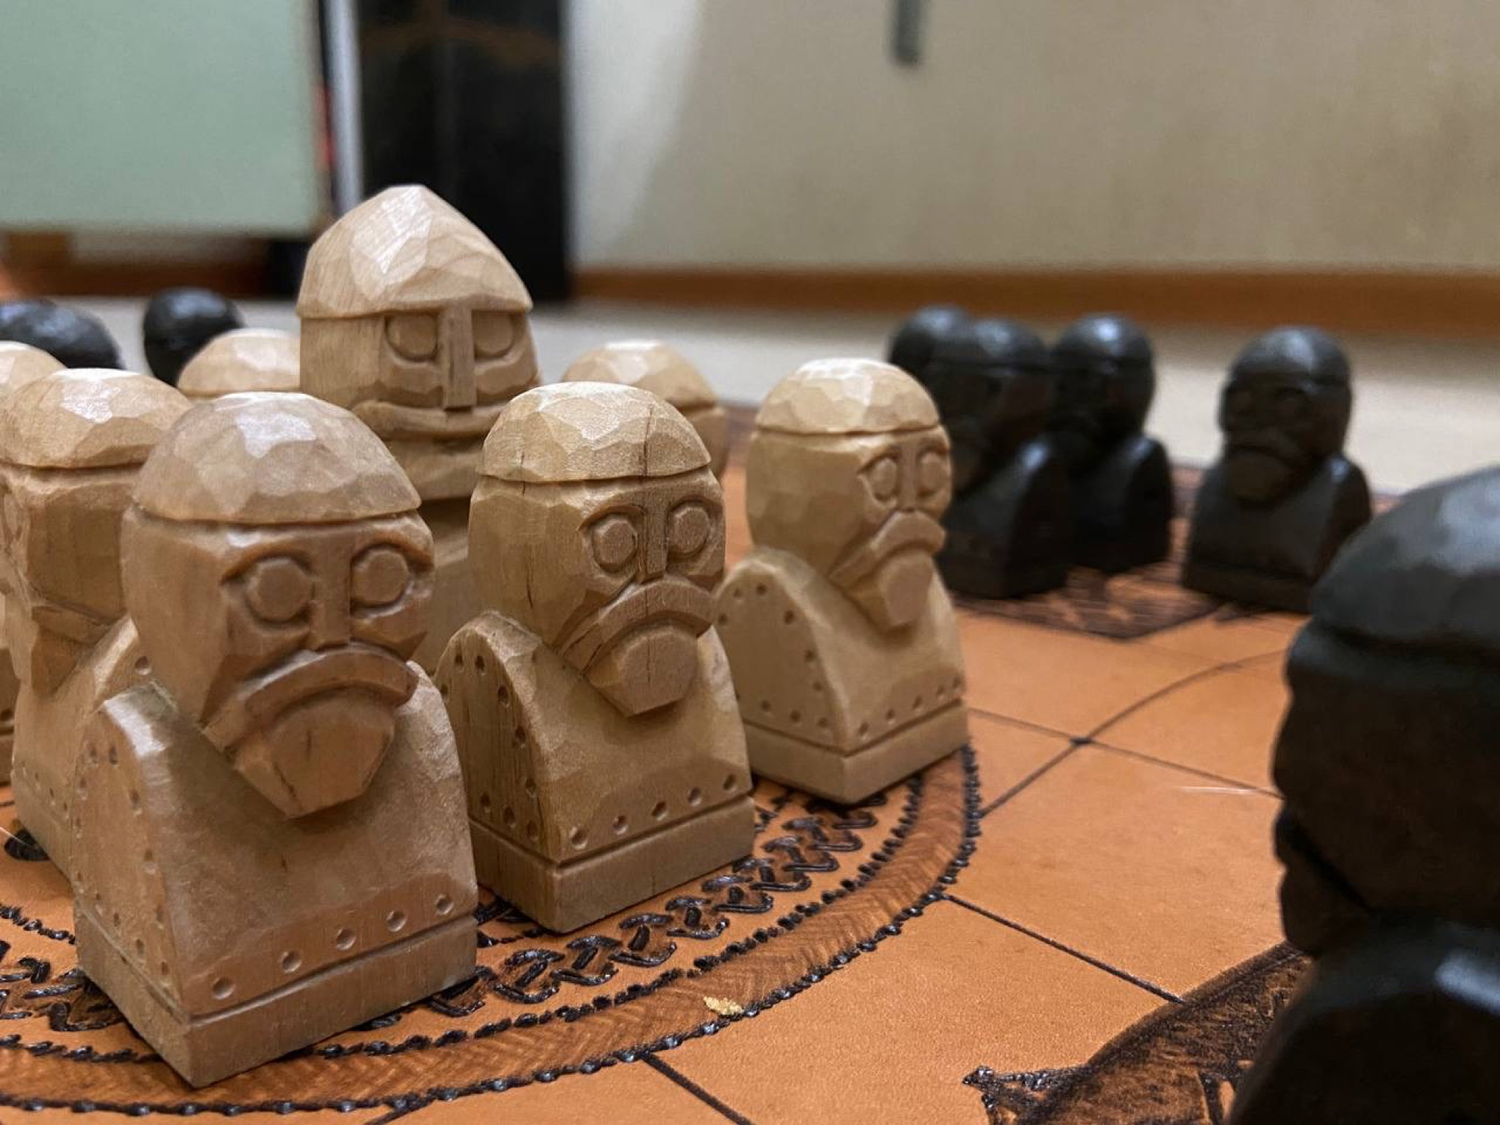 Фото №1 к отзыву покупателя Pavel Sobolev о товаре ХНЕФАТАФЛ - 2 доска кожаная для шахмат викингов